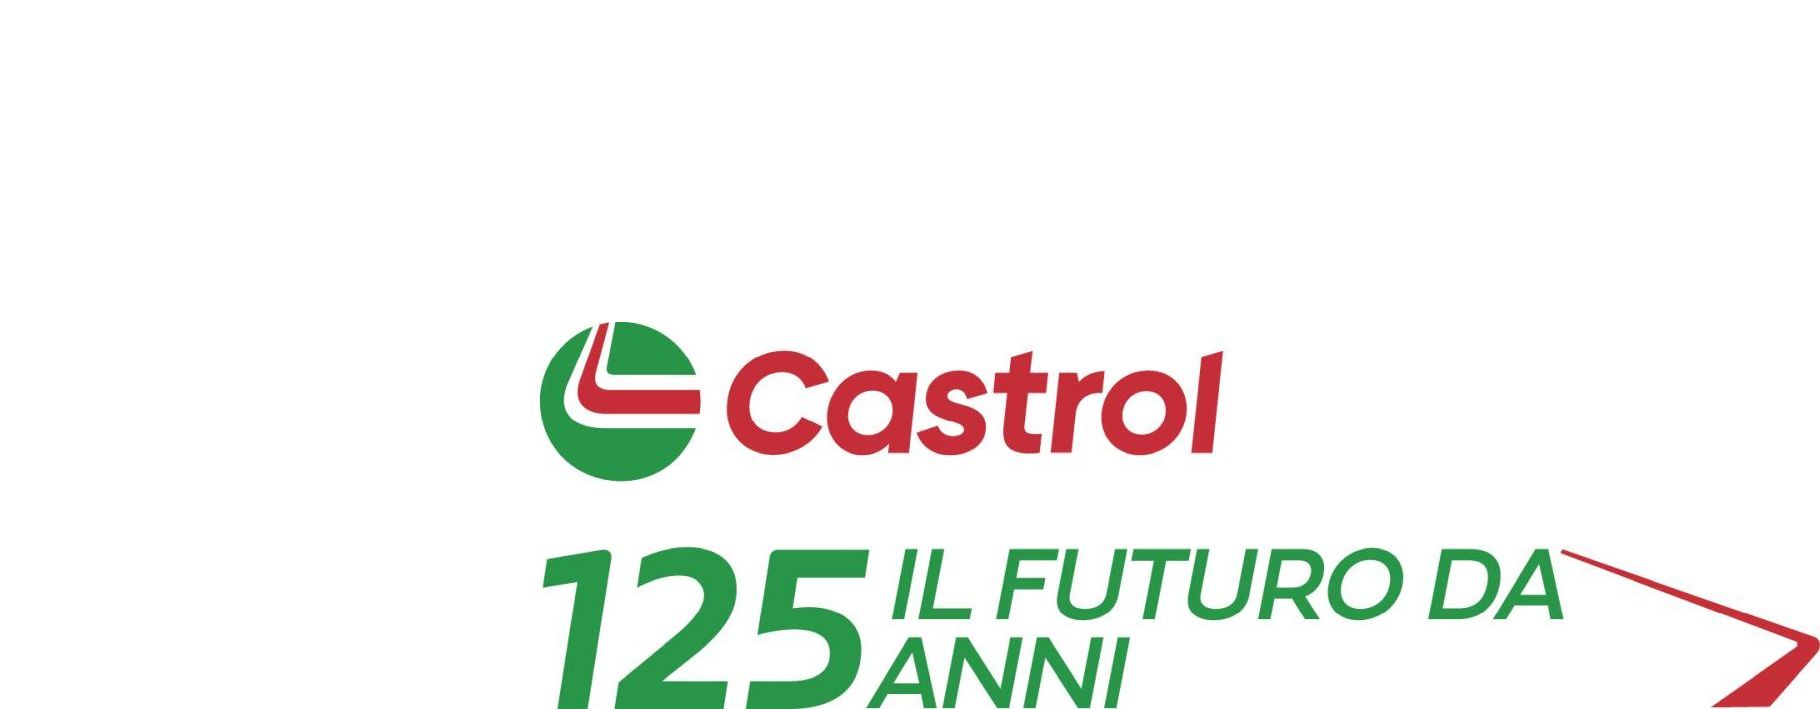 Castrol compie 125 anni e guarda al futuro con una nuova strategia